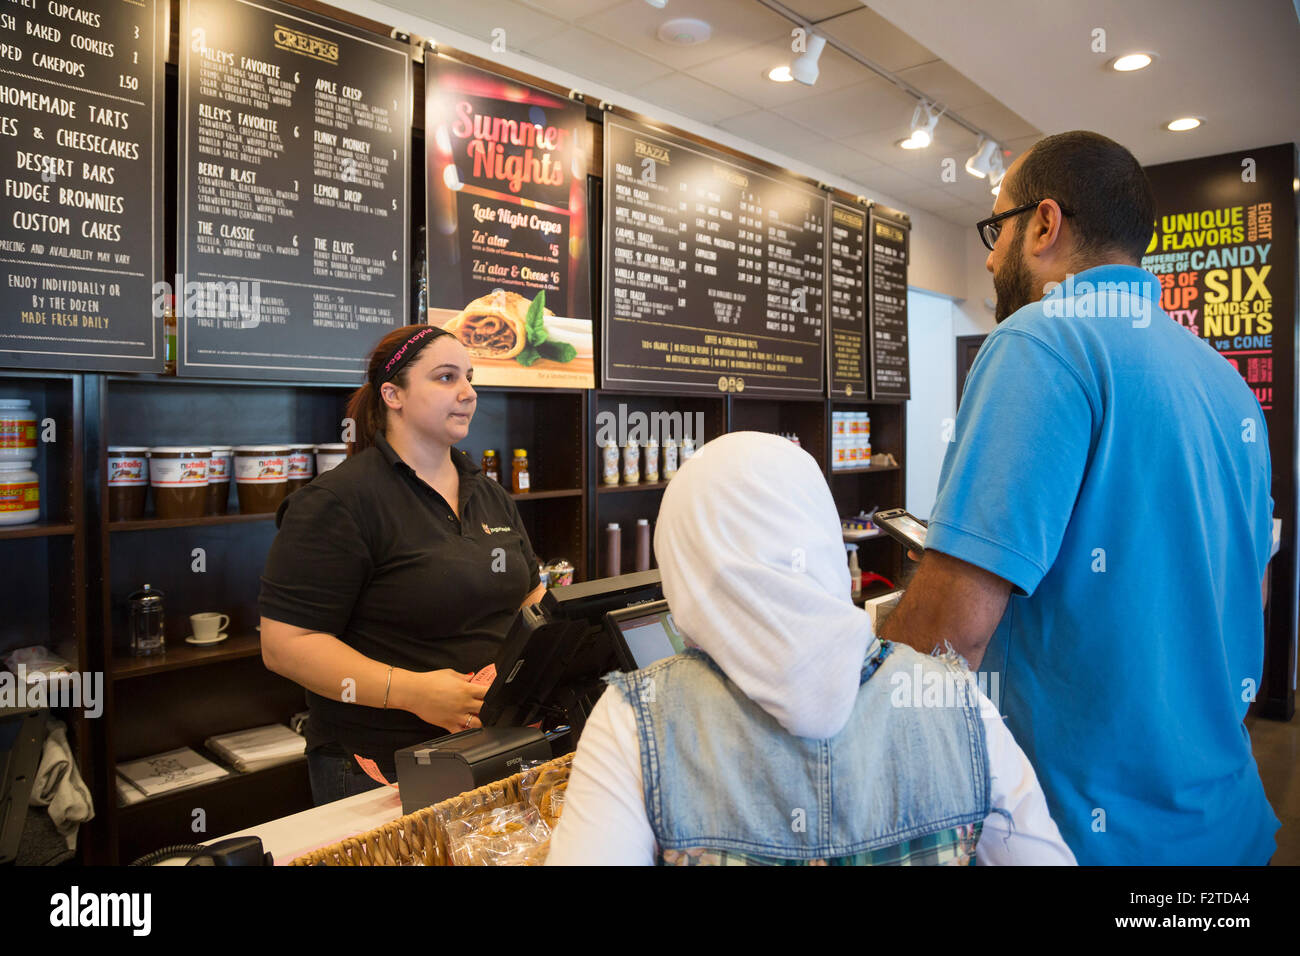 Dearborn, Michigan - ein Arbeiter in der Yogurtopia frozen Joghurt Franchise in einer arabisch-amerikanische Nachbarschaft. Stockfoto